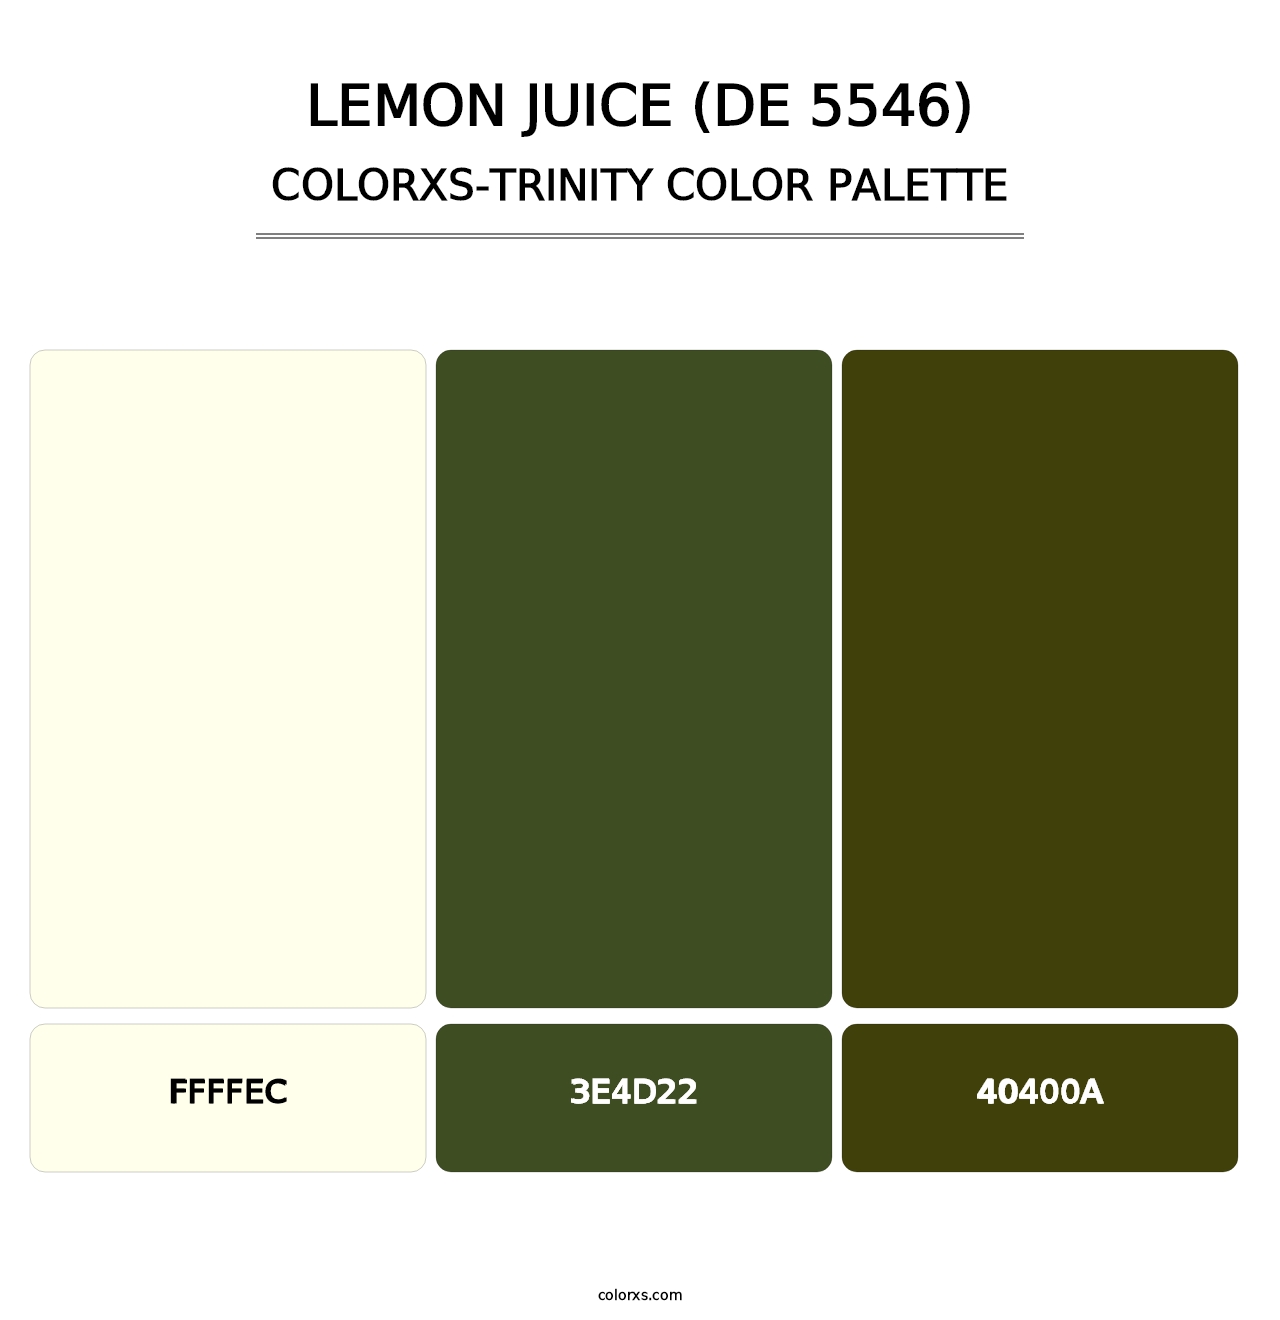 Lemon Juice (DE 5546) - Colorxs Trinity Palette